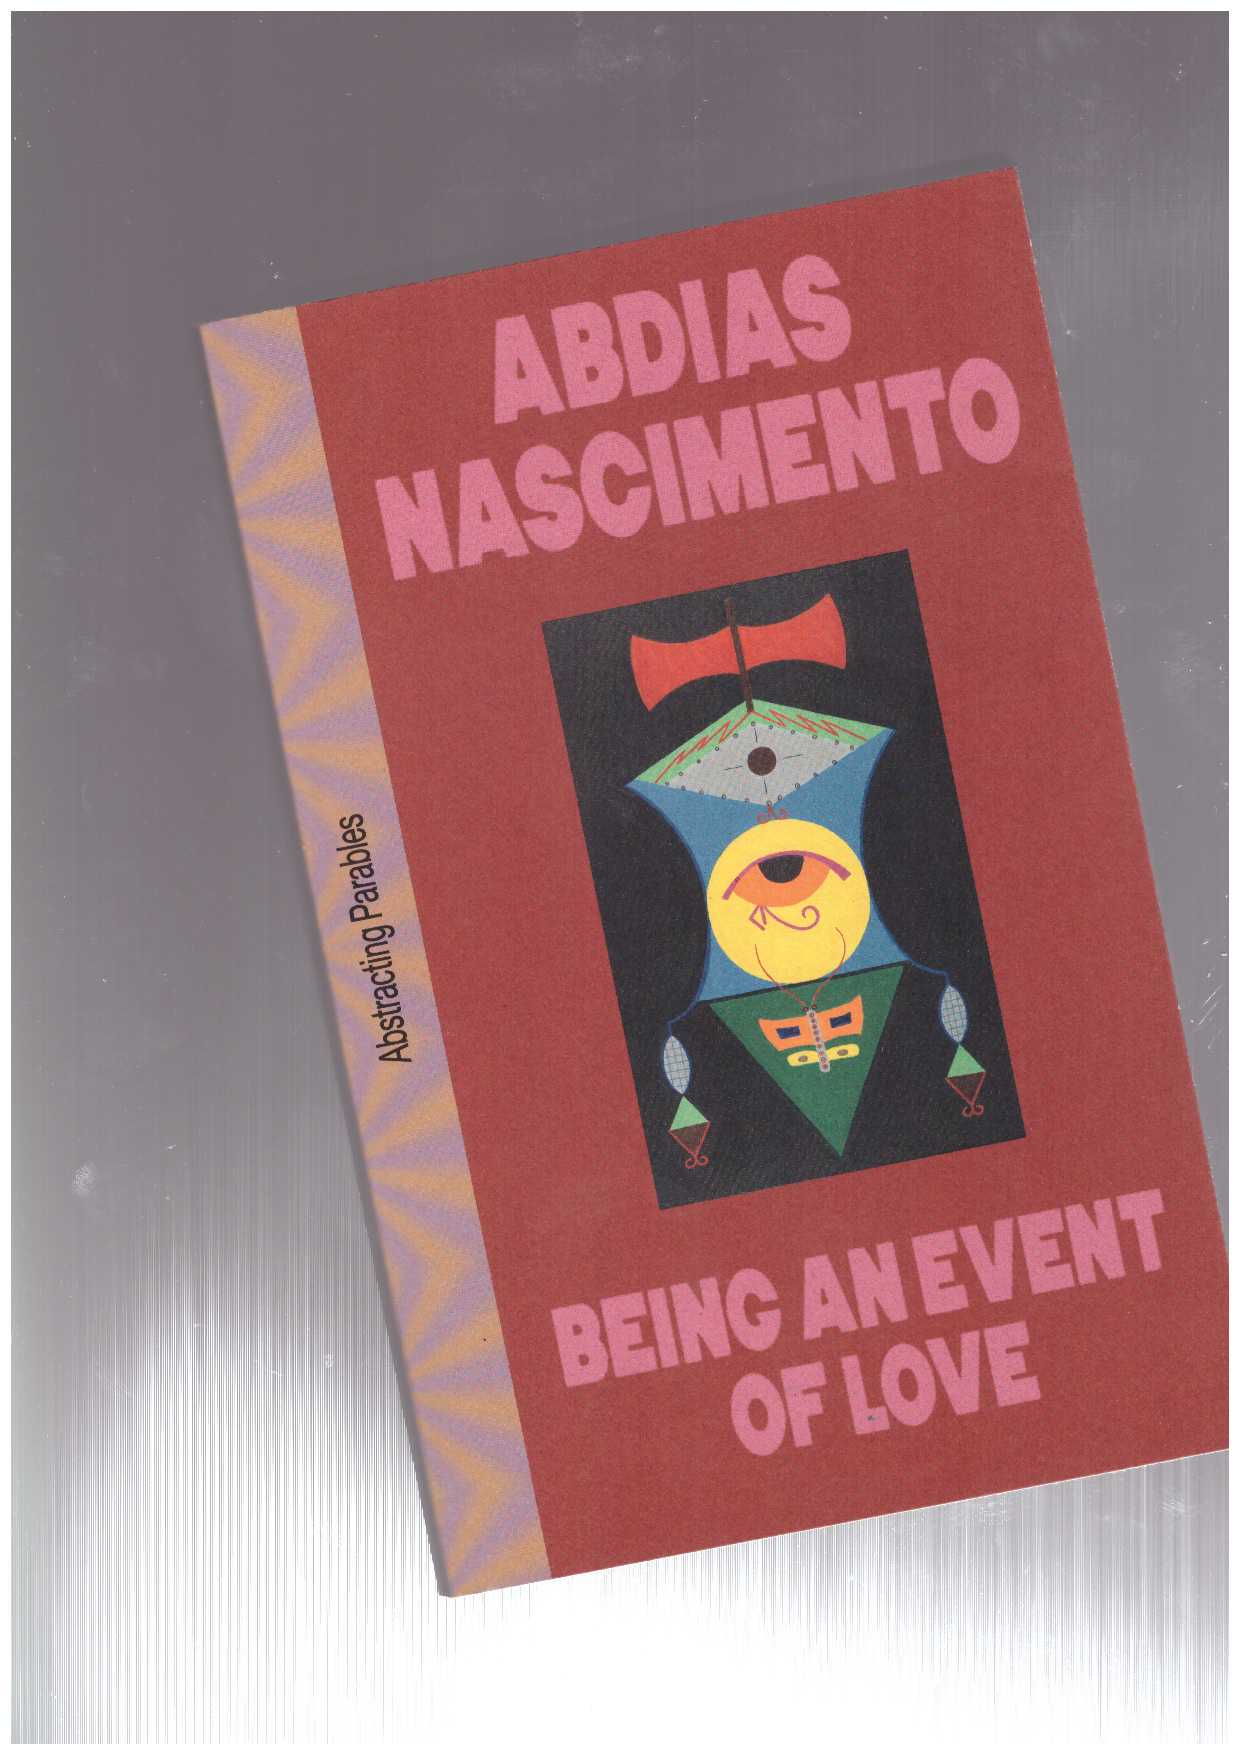 NASCIMENTO, Abdias - Being An Event of Love